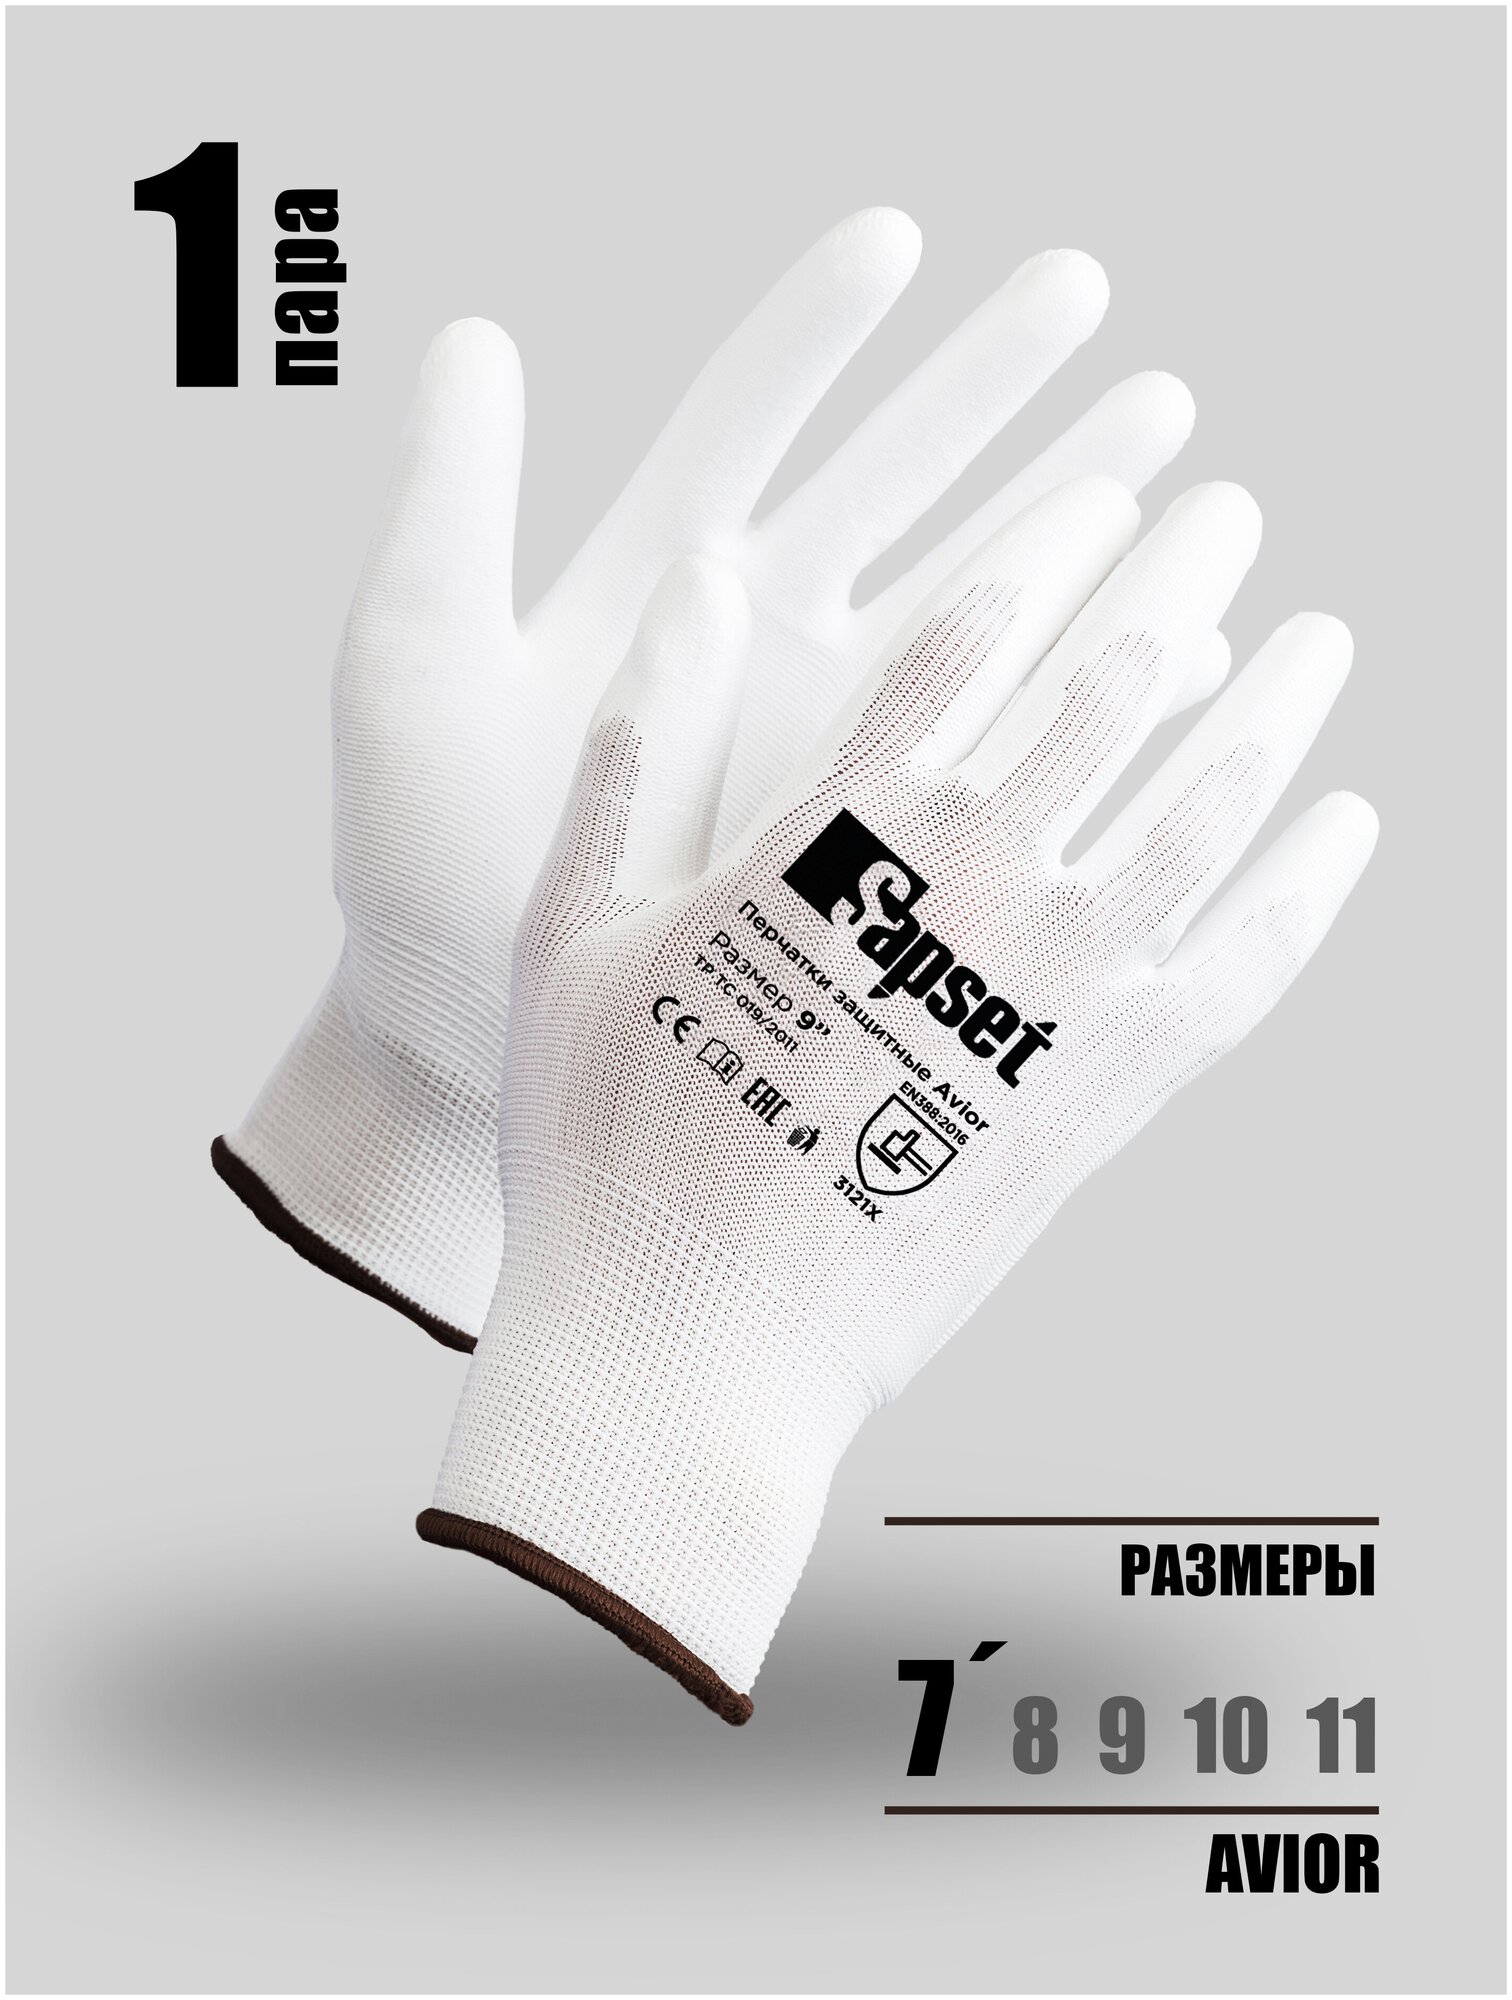 Перчатки защитные рабочие / Для работы в саду и с розами/ Для складских и строительных работ с покрытием из полиуретана Avior White 1 пара, размер 7